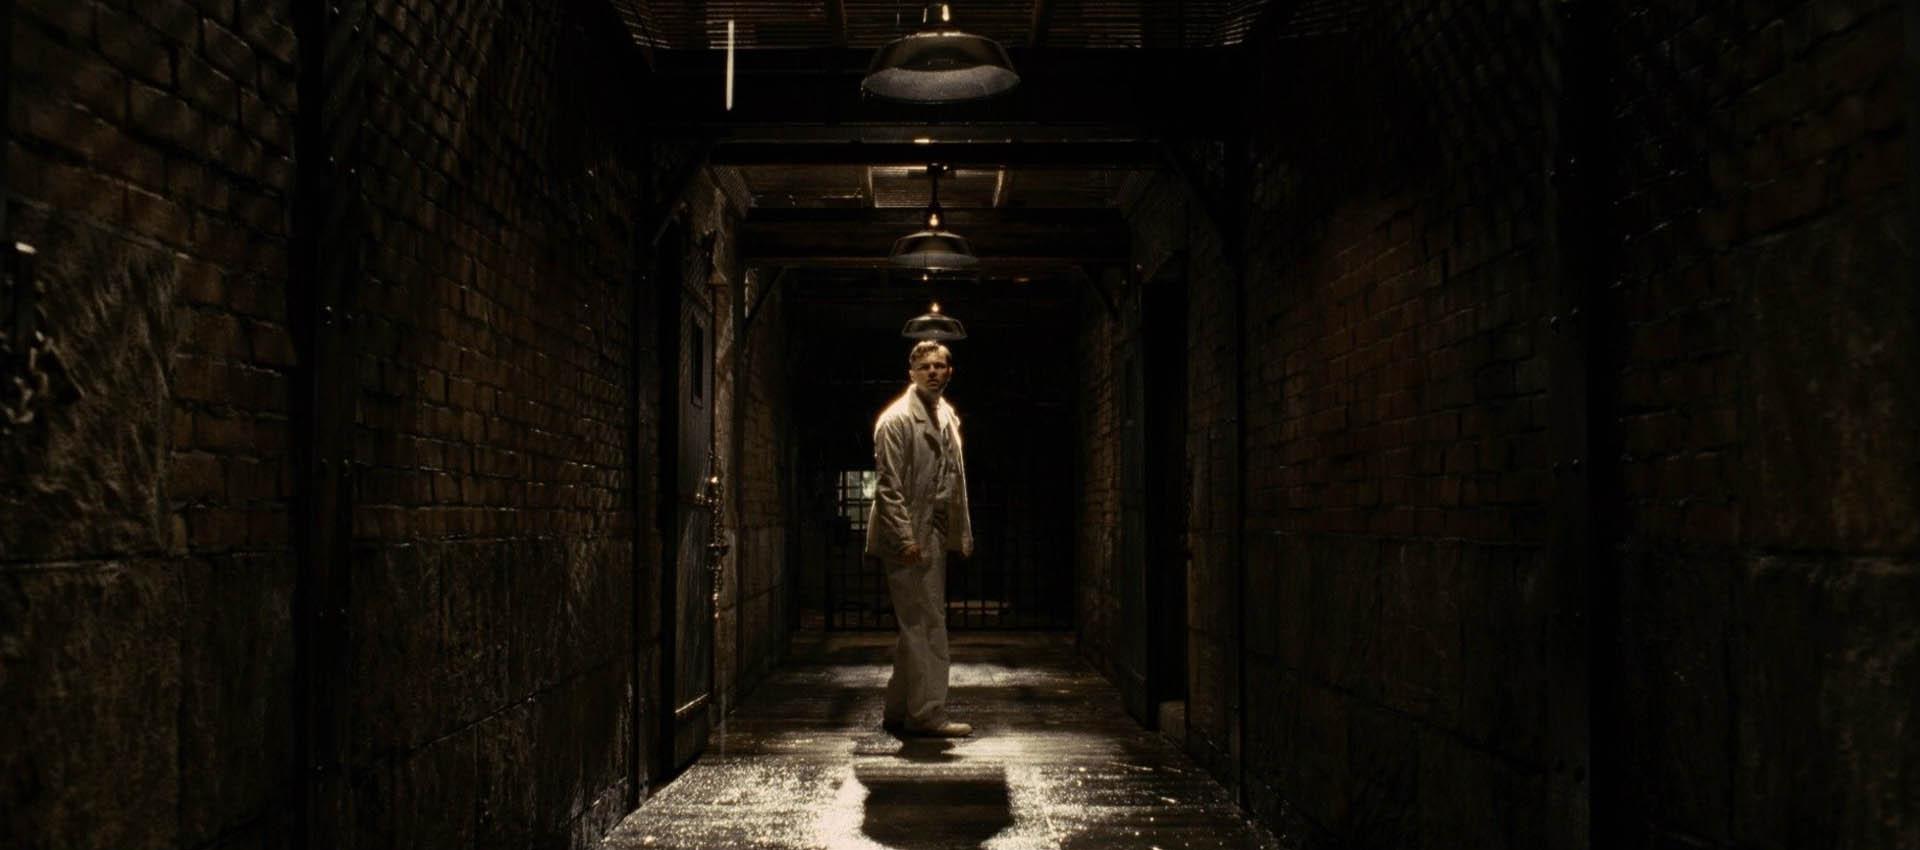 دی‌کاپریو در یک راهرو تاریک در فیلم Shutter Island